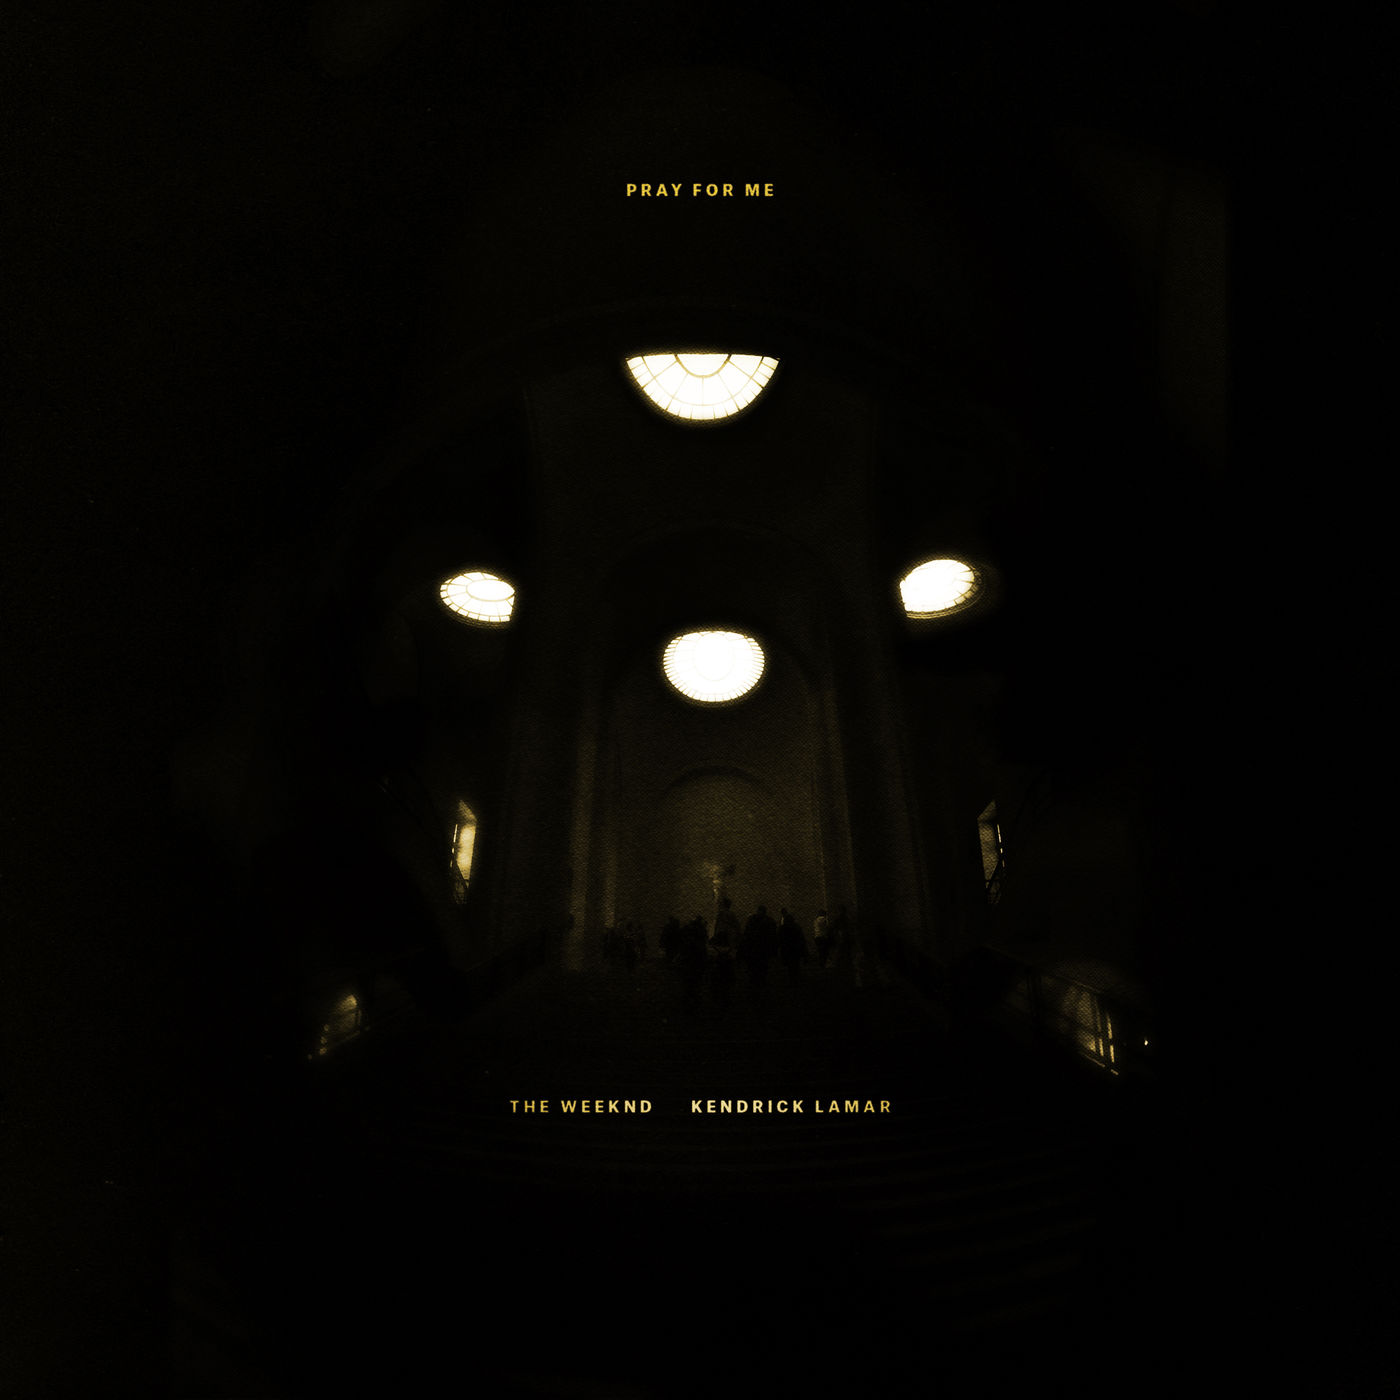 The Weeknd – Pray For Me【44.1kHz／16bit】美国区-OppsUpro音乐帝国